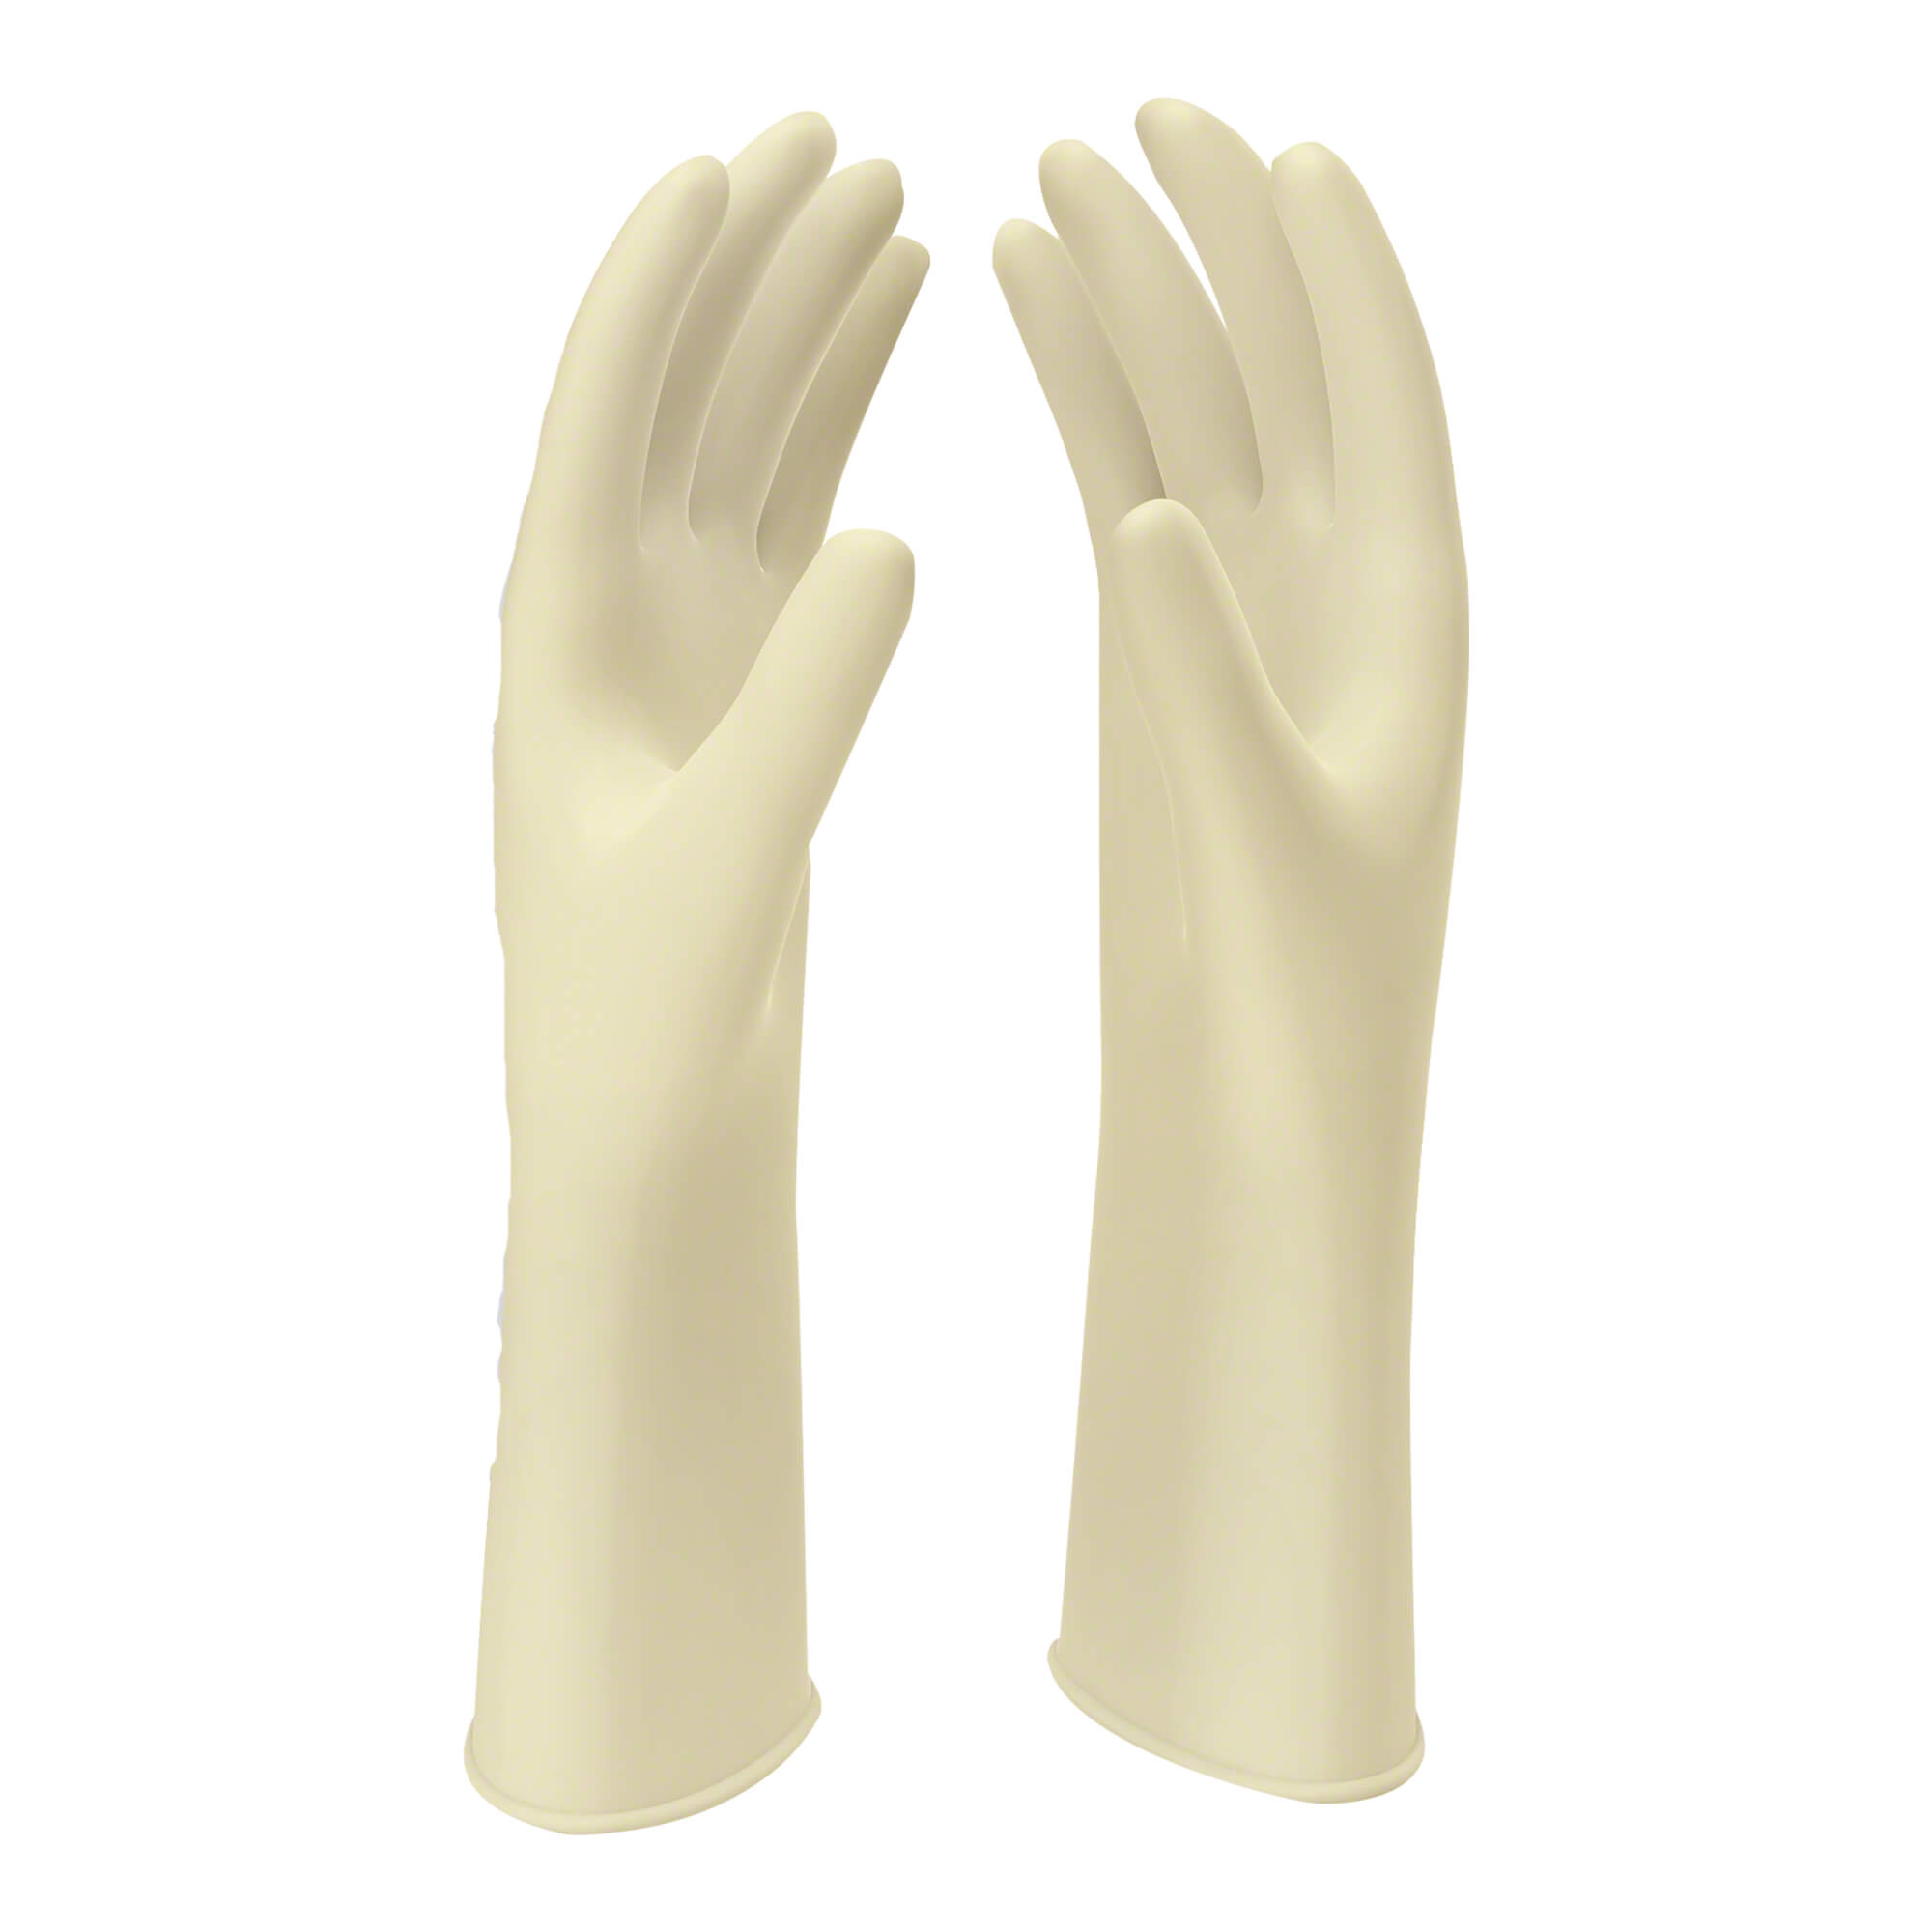 Naturweiße Latex OP-Handschuhe. Größe 7,5.